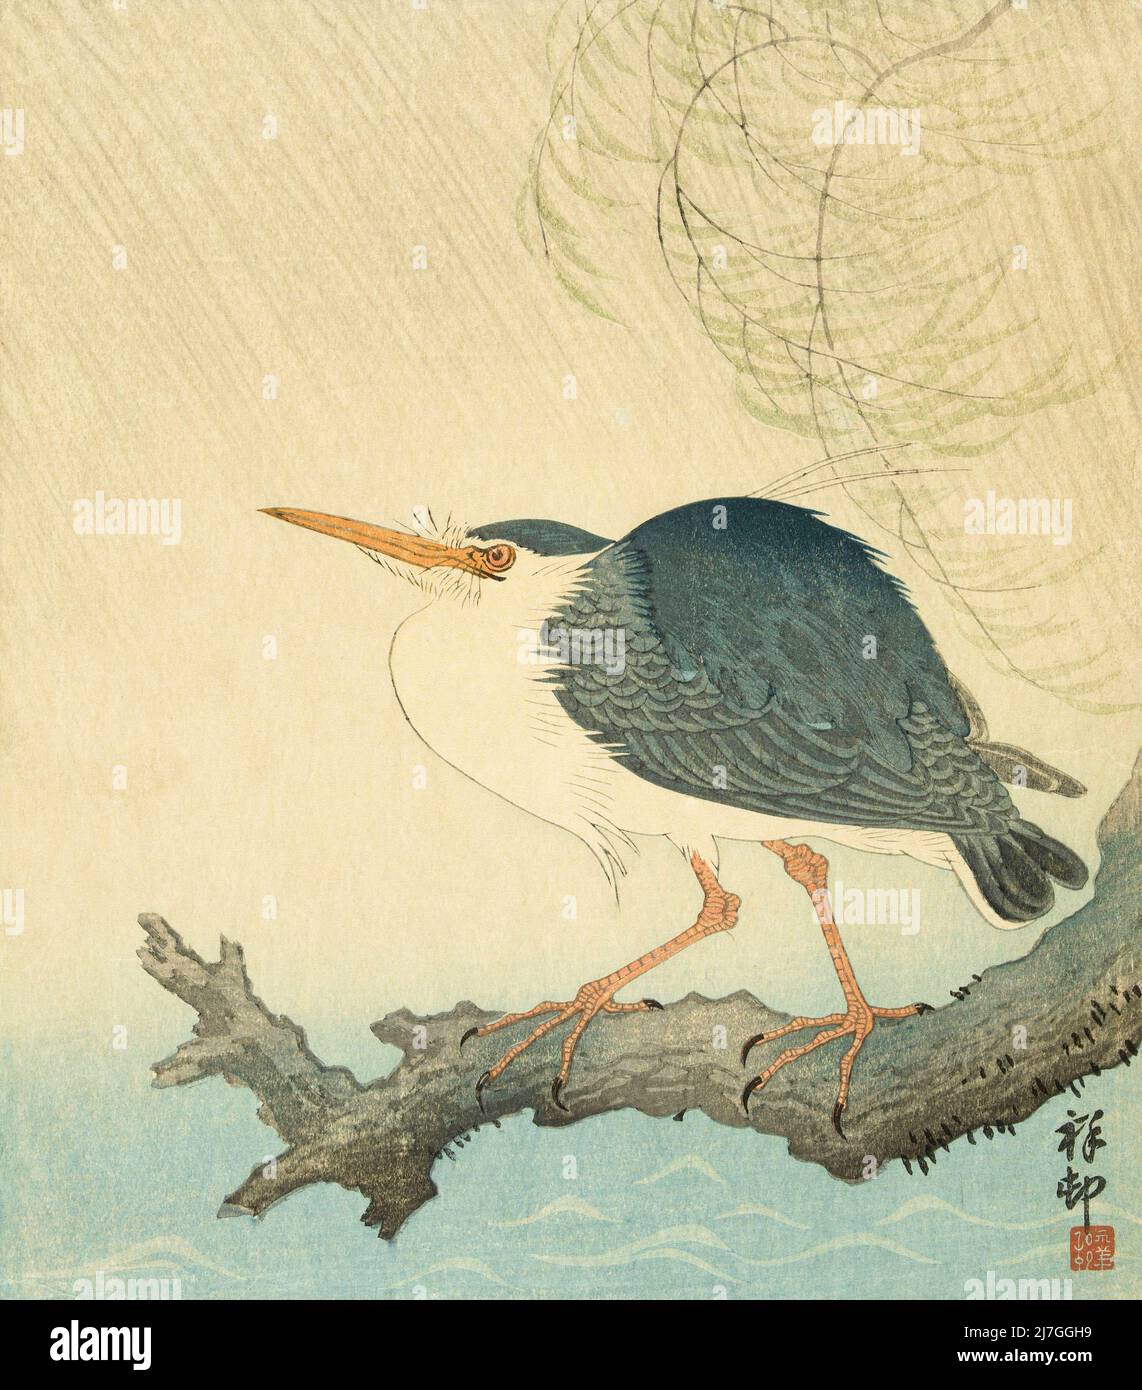 Heron in a Storm, par l'artiste japonais Ohara Koson, 1877 - 1945. Ohara Koson faisait partie du mouvement Shin-hanga, ou de nouveaux tirages. Banque D'Images